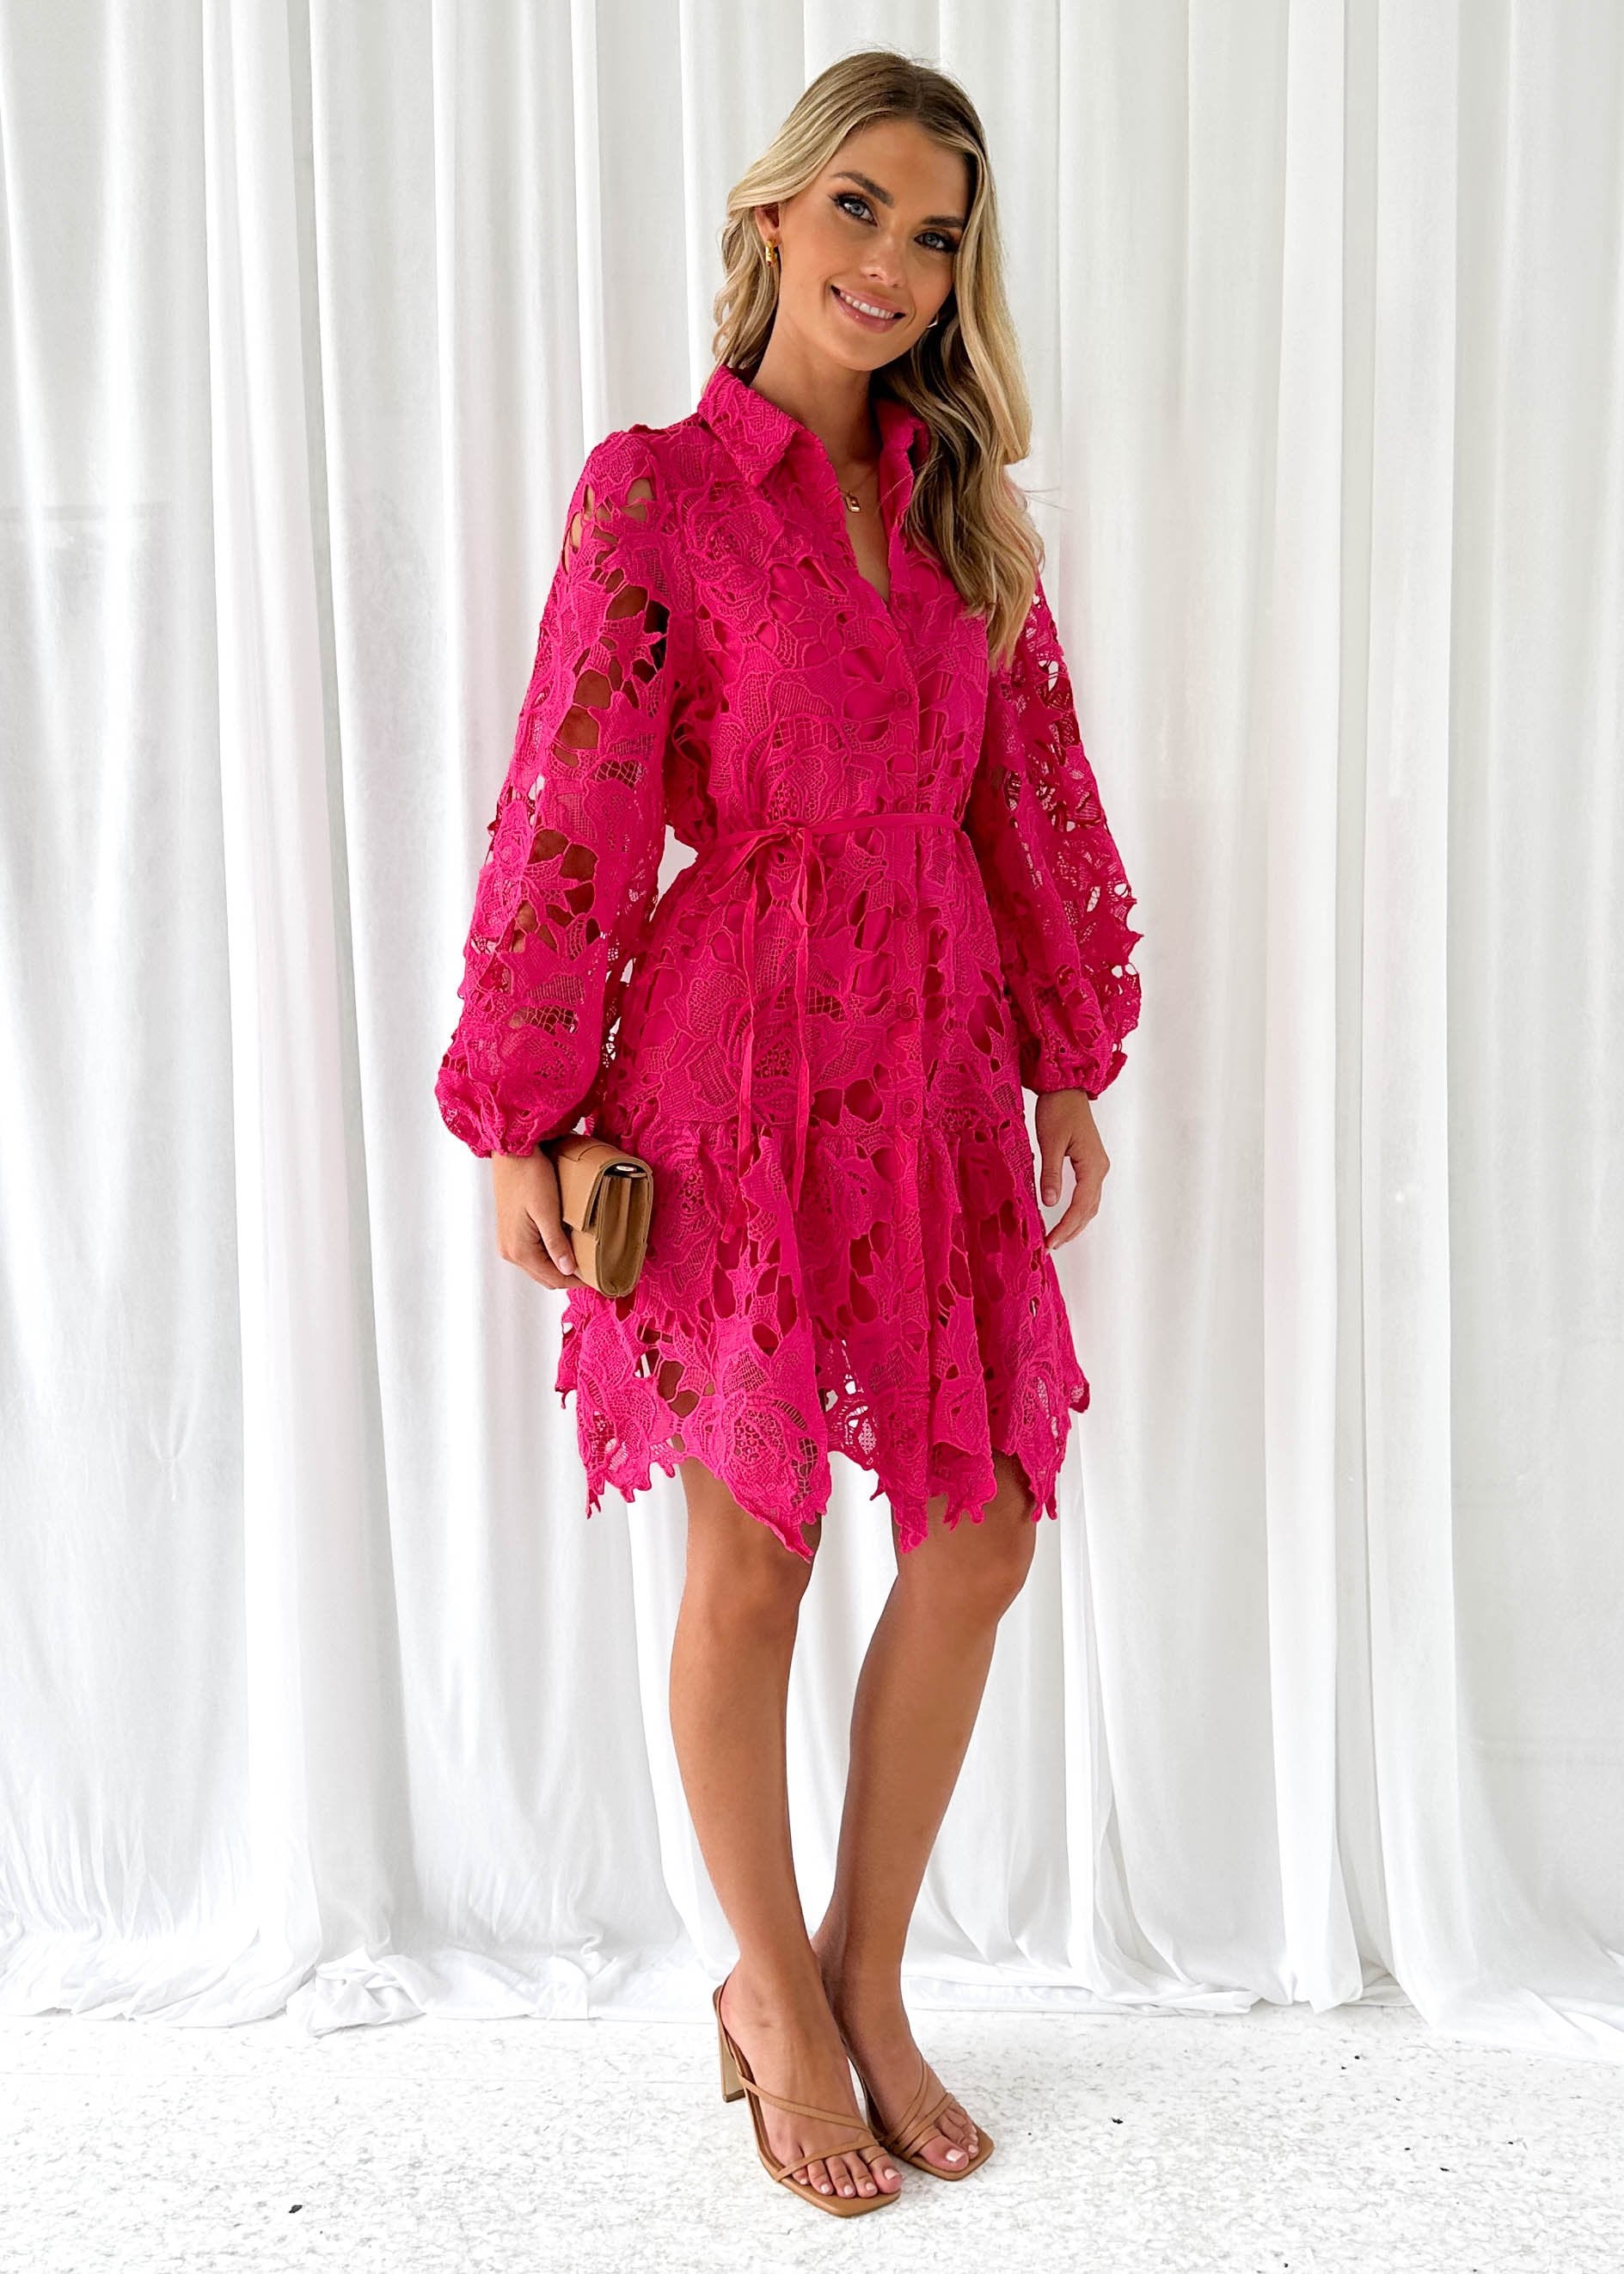 Gillion Dress - Pink Lace